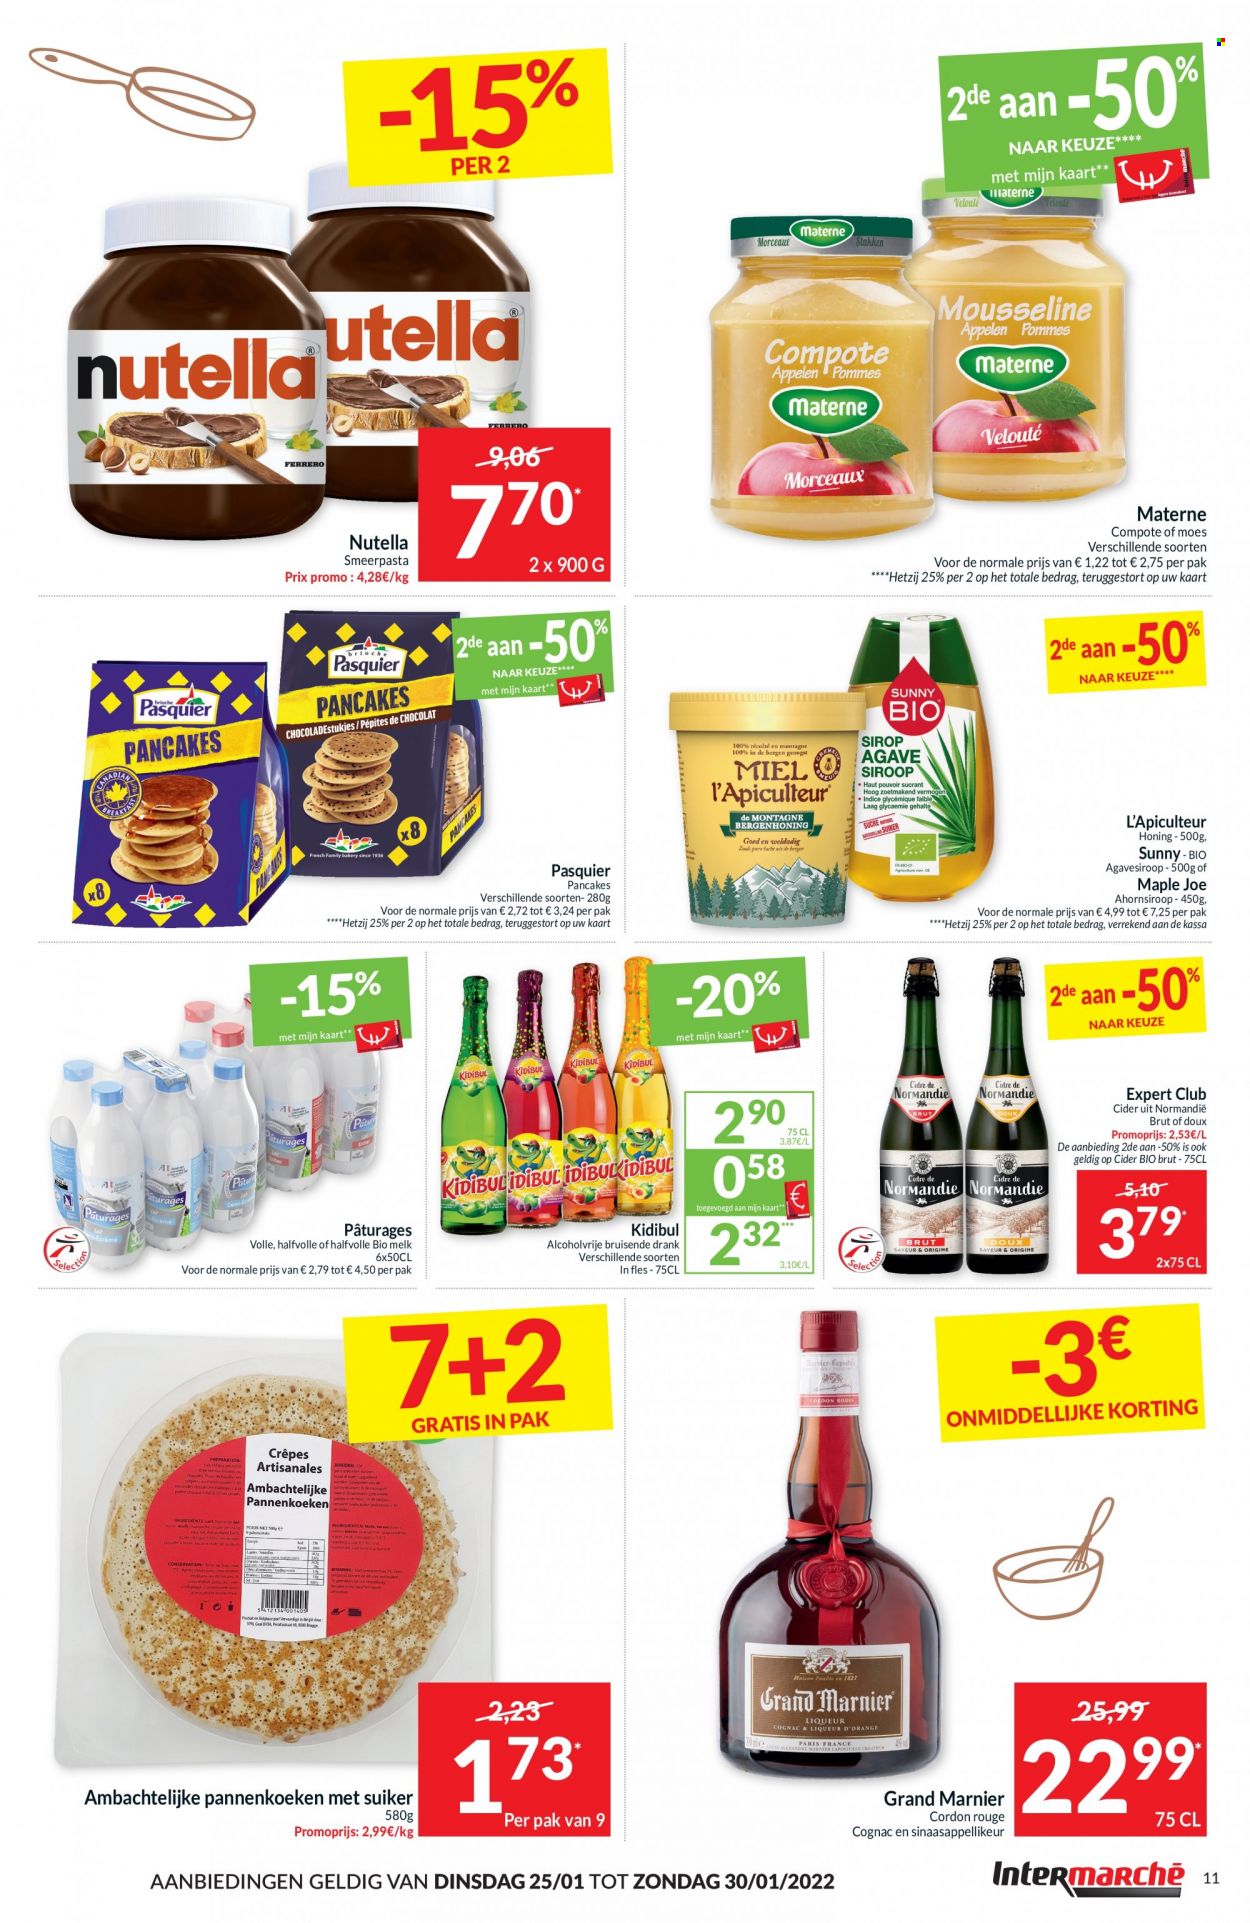 thumbnail - Intermarché-aanbieding - 25/01/2022 - 30/01/2022 -  producten in de aanbieding - melk, Nutella, suiker, agavesiroop, ahornsiroop, cider, cognac, Grand Marnier. Pagina 11.